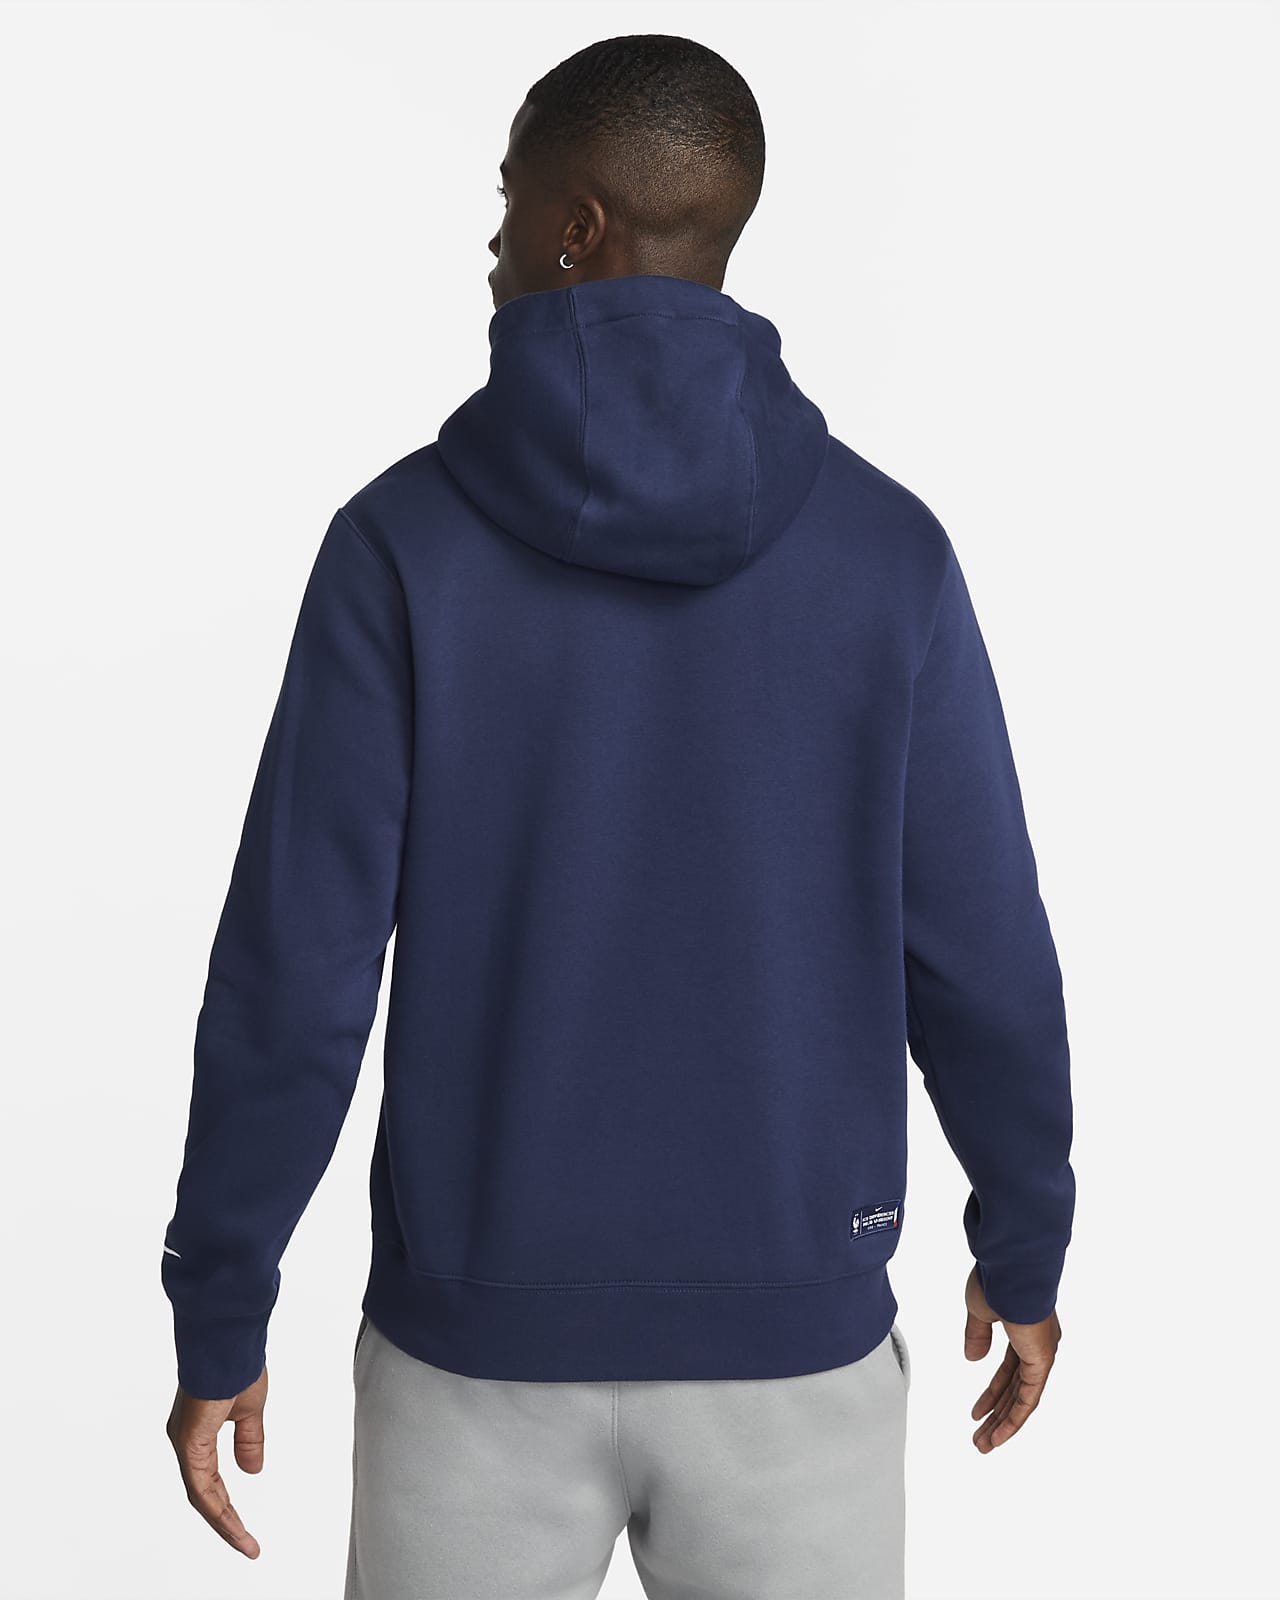 Dunkelblau L HERREN Pullovers & Sweatshirts Fleece Rabatt 81 % NoName sweatshirt 